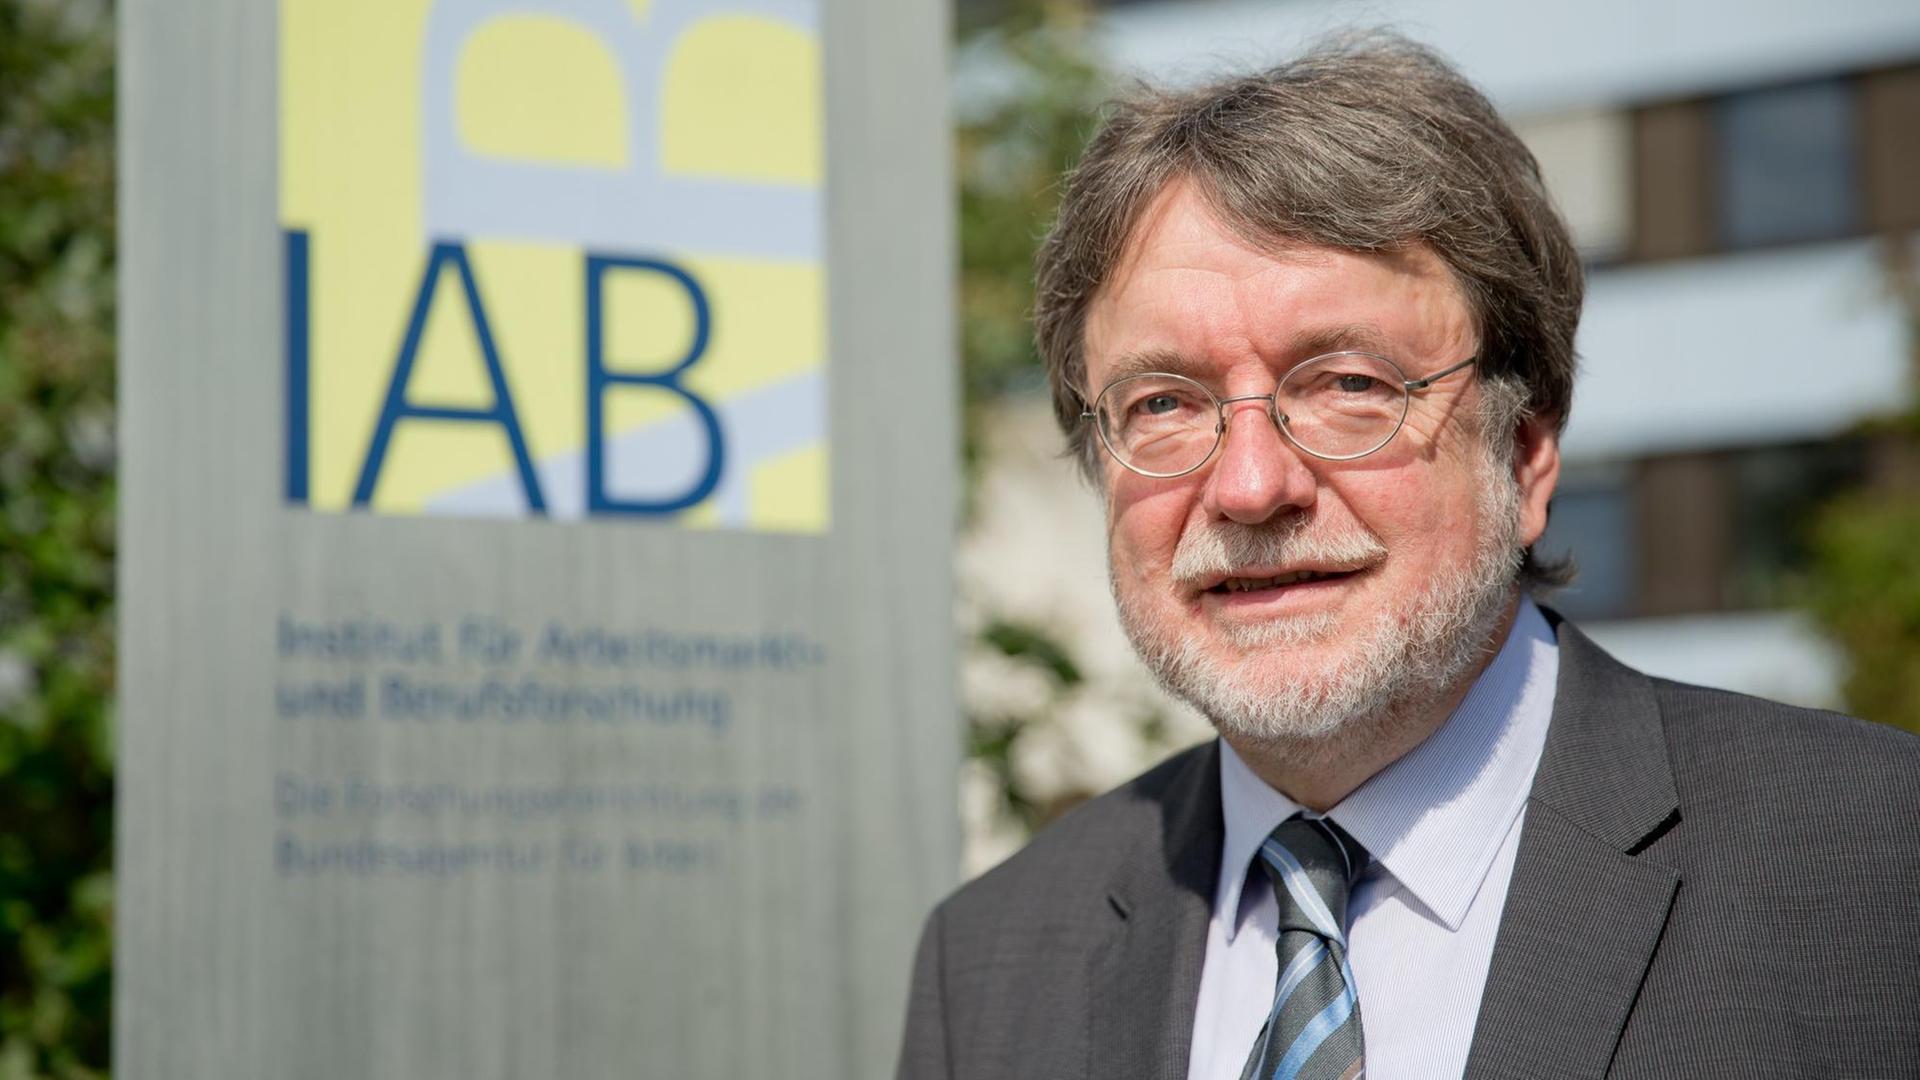 Der Direktor des Instituts für Arbeitsmarkt- und Berufsforschung (IAB), Joachim Möller.